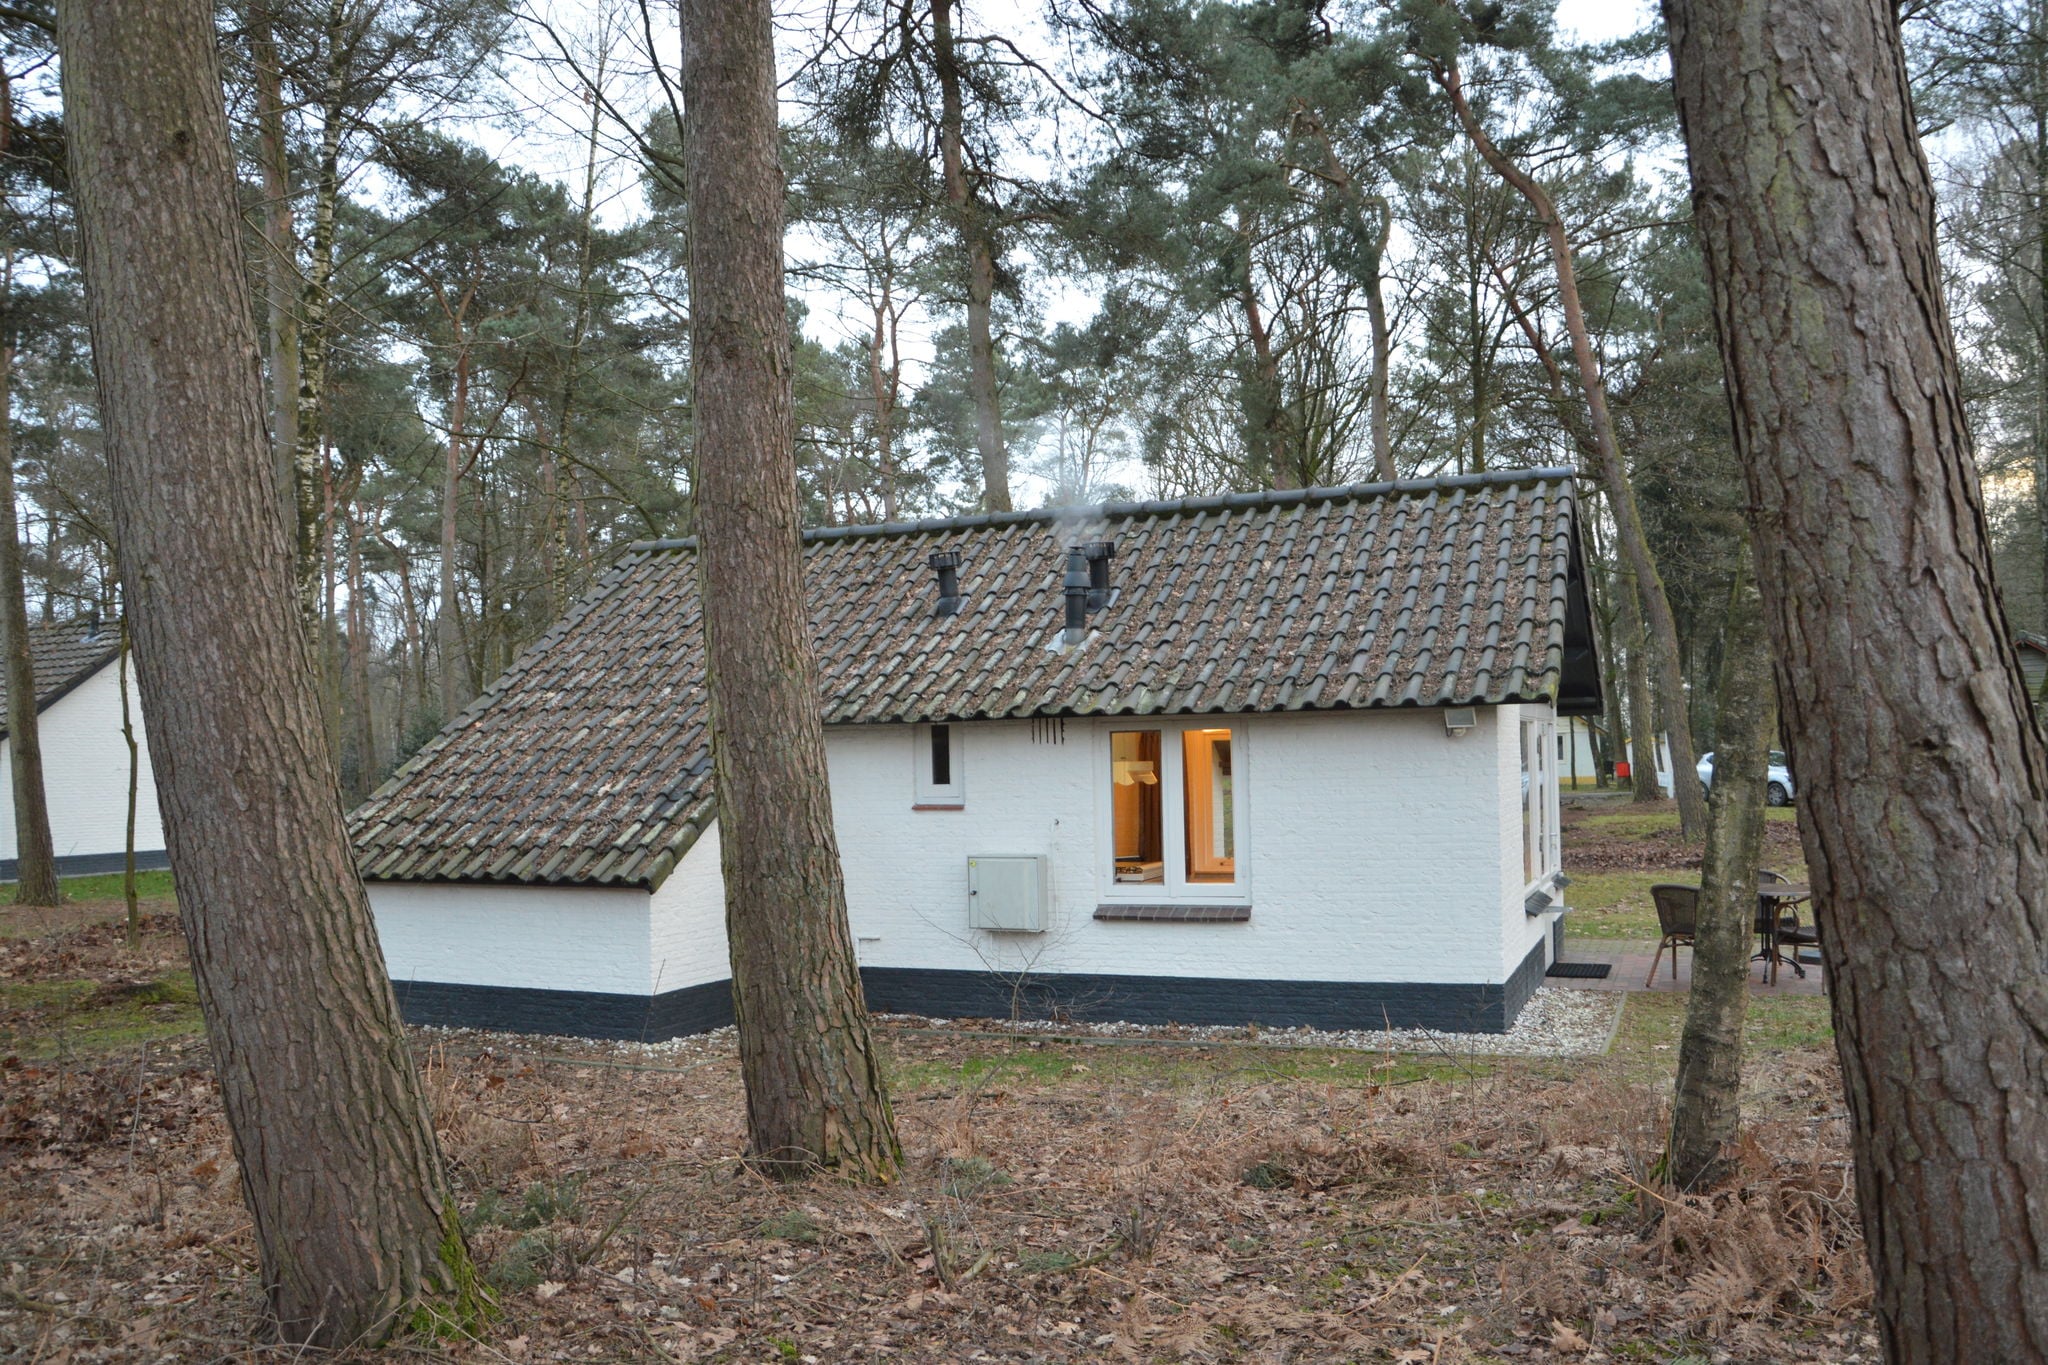 Geheel vrijstaande bungalow op een natuurrijkpark aan een groot ven